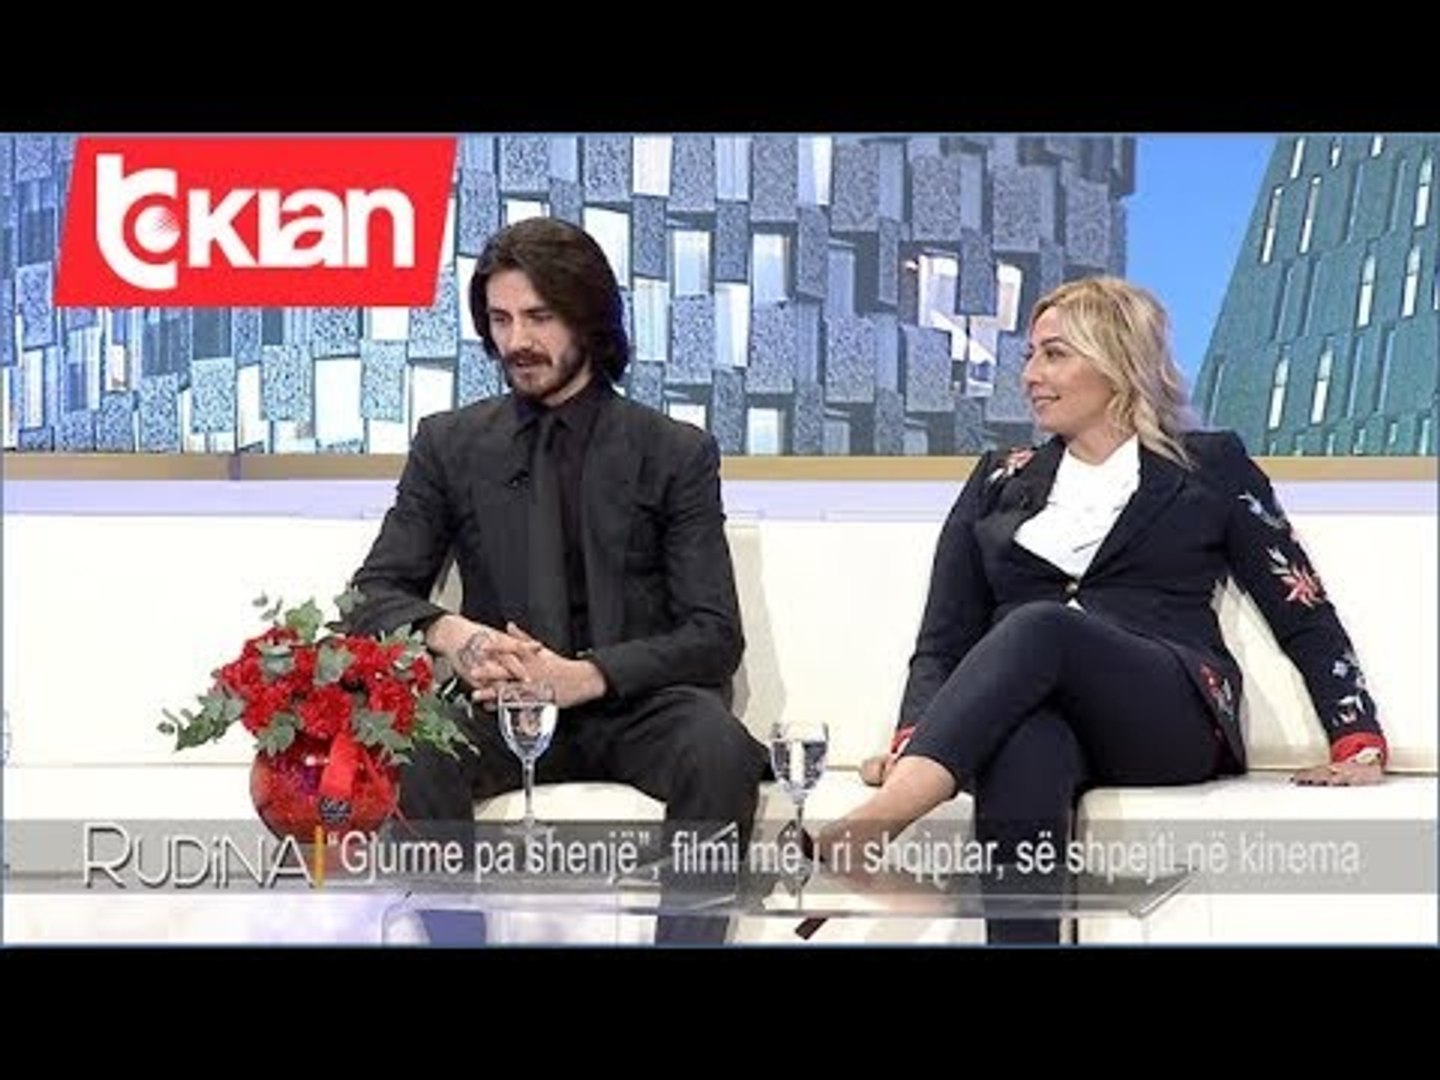 ⁣Rudina - “Gjurme pa shenje”, filmi me i ri shqiptar, se shpejti ne kinema! (10 shkurt 2020)